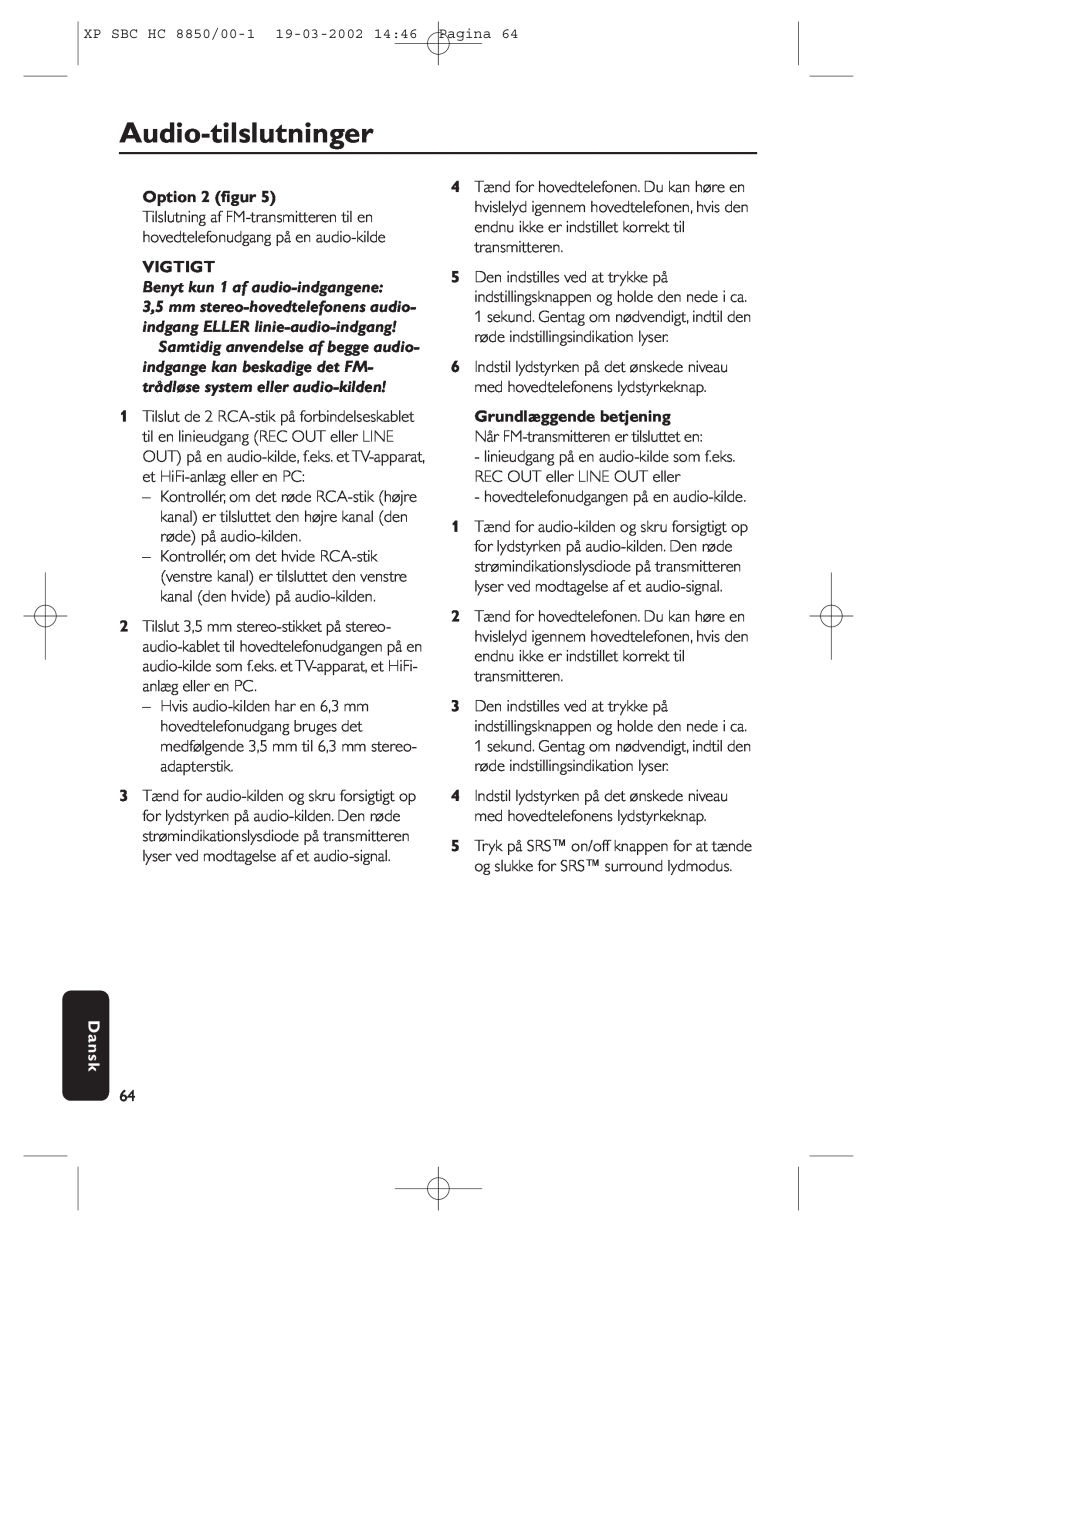 Philips HC8850 manual Audio-tilslutninger, Option 2 ﬁgur, Vigtigt, Dansk 